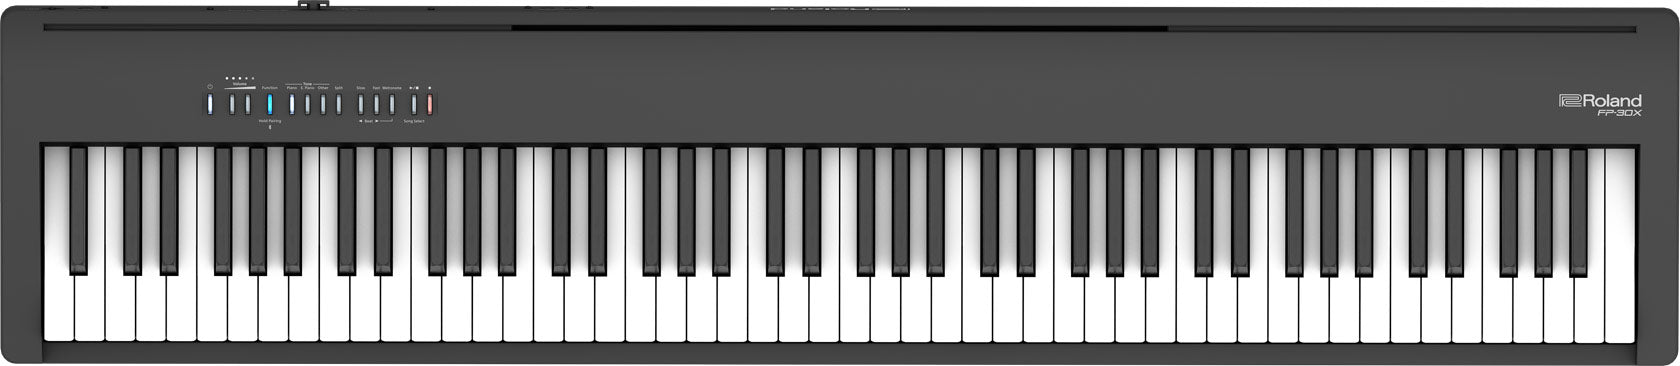 Roland FP-30X-BK 88 Key Digital Piano Keyboard w/Onboard Stereo Speakers - Black